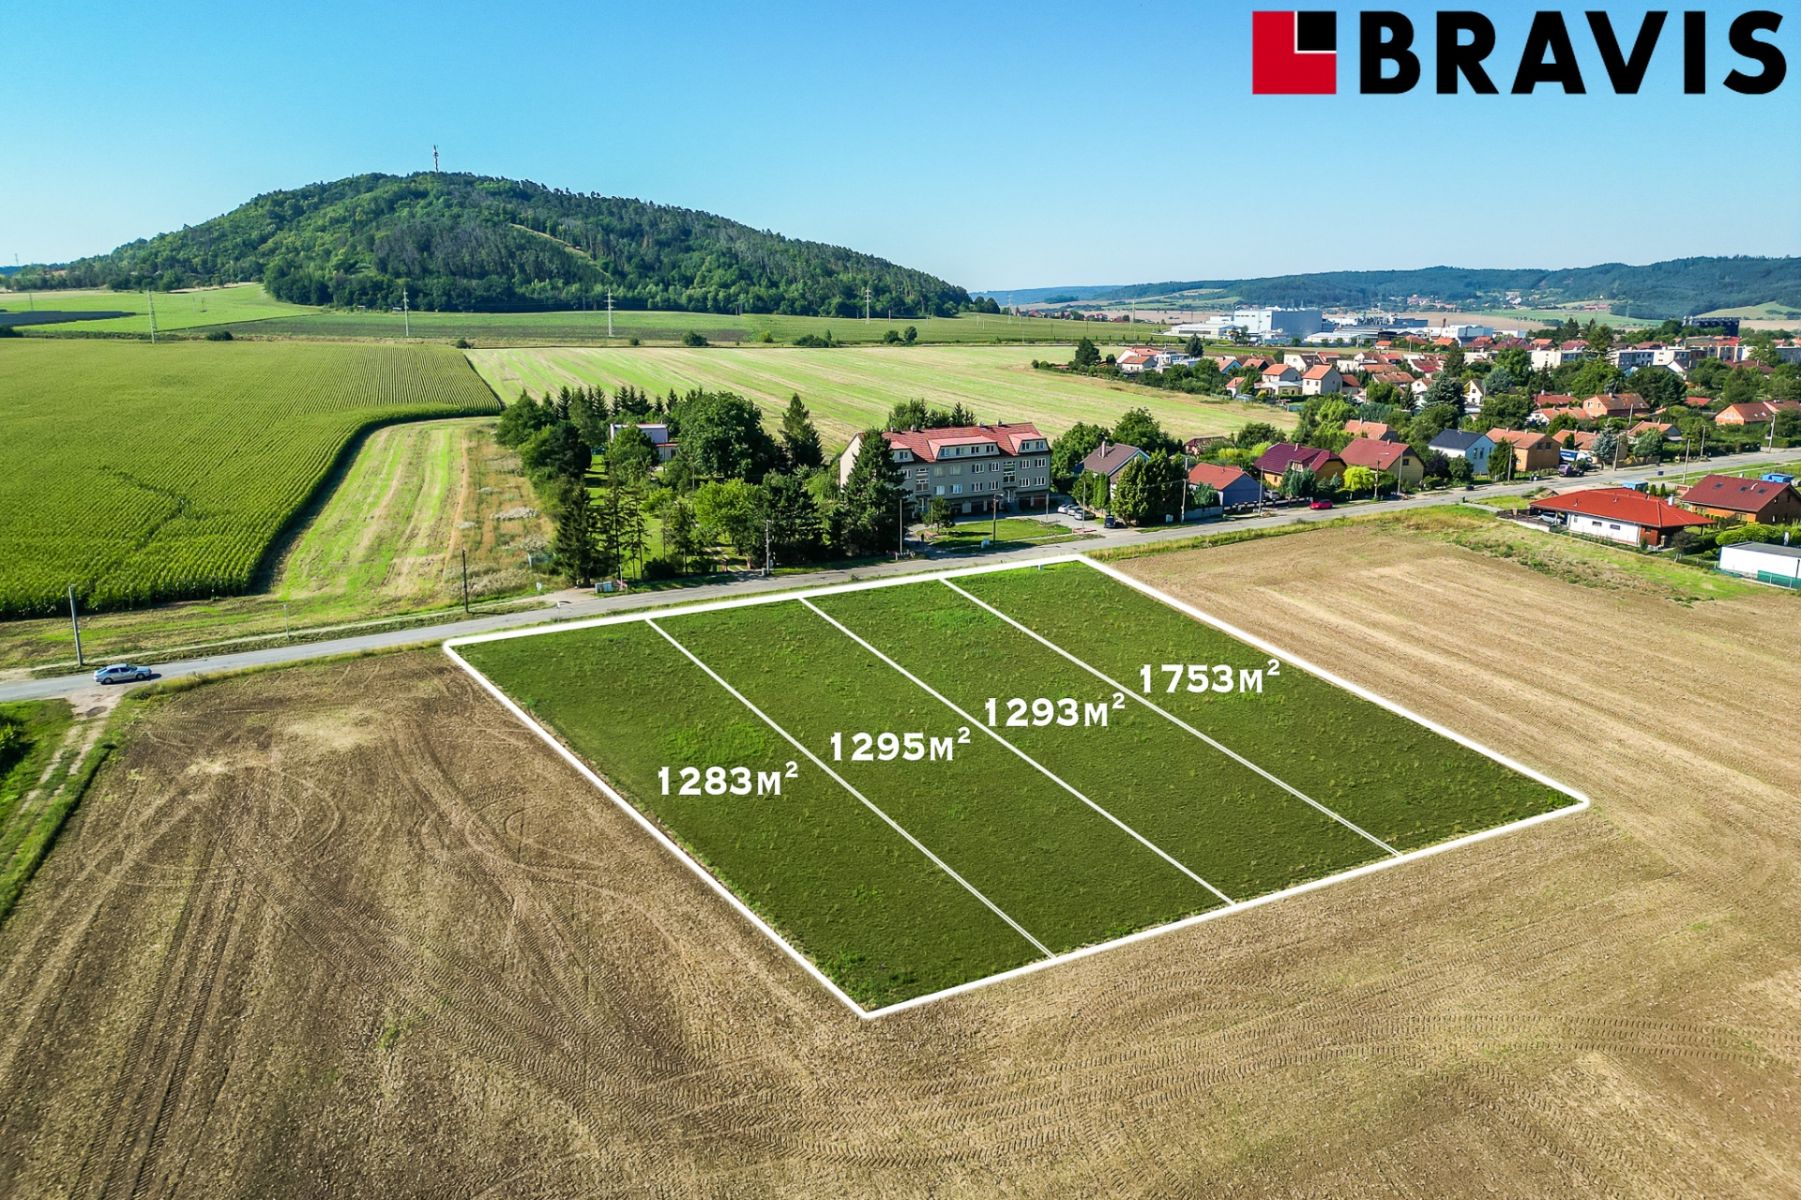 Prodej pozemku o rozloze 1283 m2, obec Drásov, okres Brno-venkov, studie pro solitérní rodinné domy, obrázek č. 1